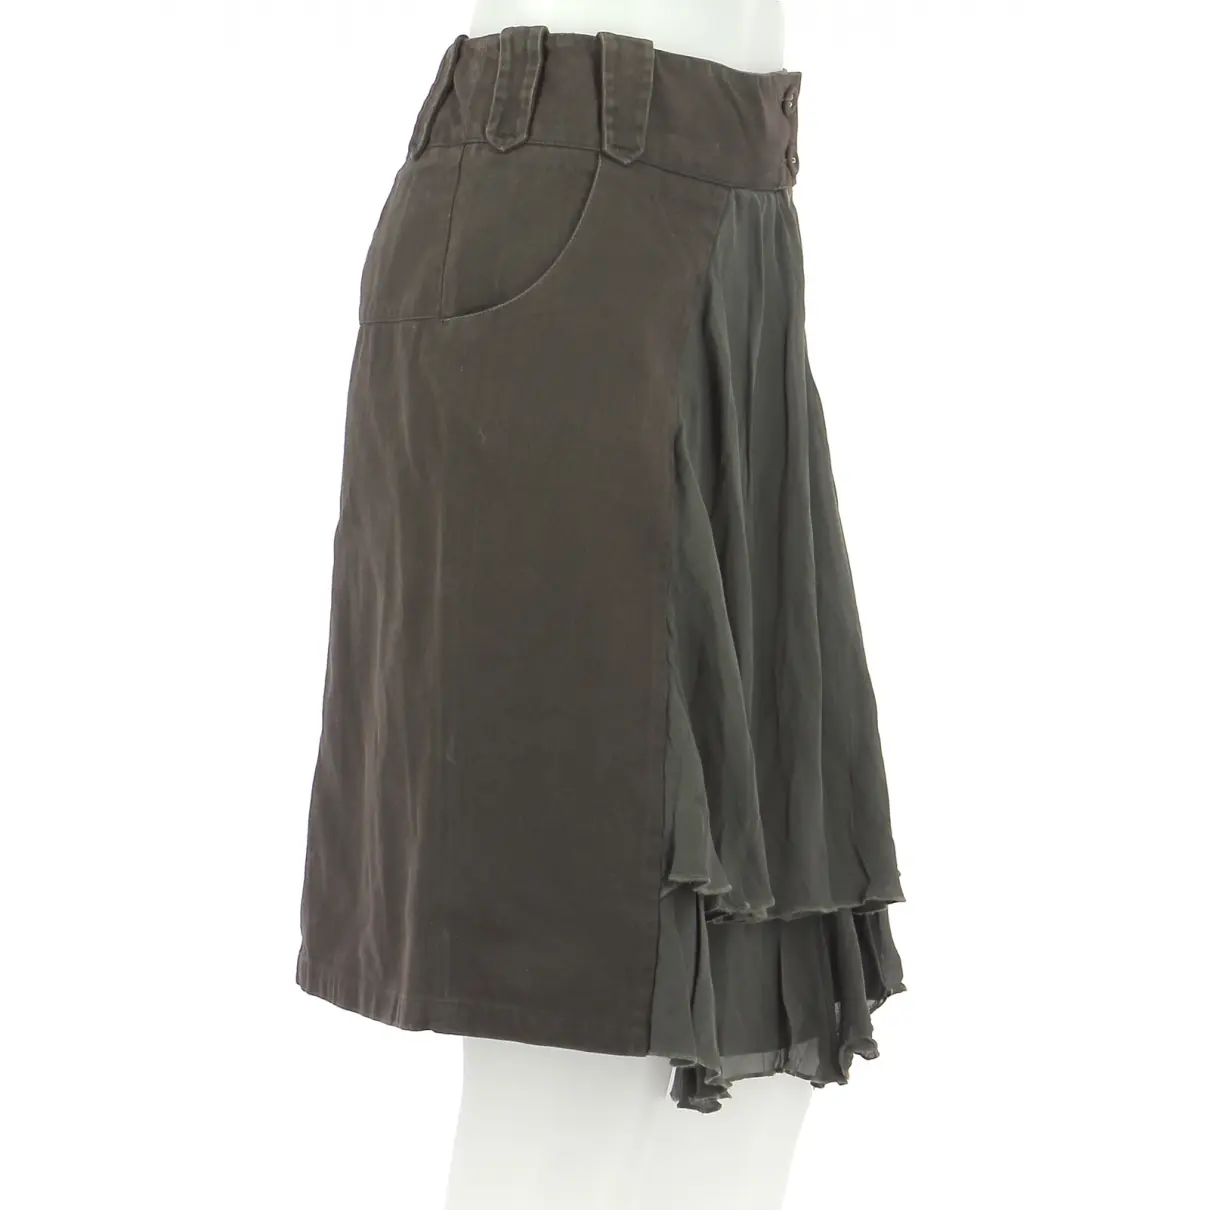 Buy Comptoir Des Cotonniers Skirt online